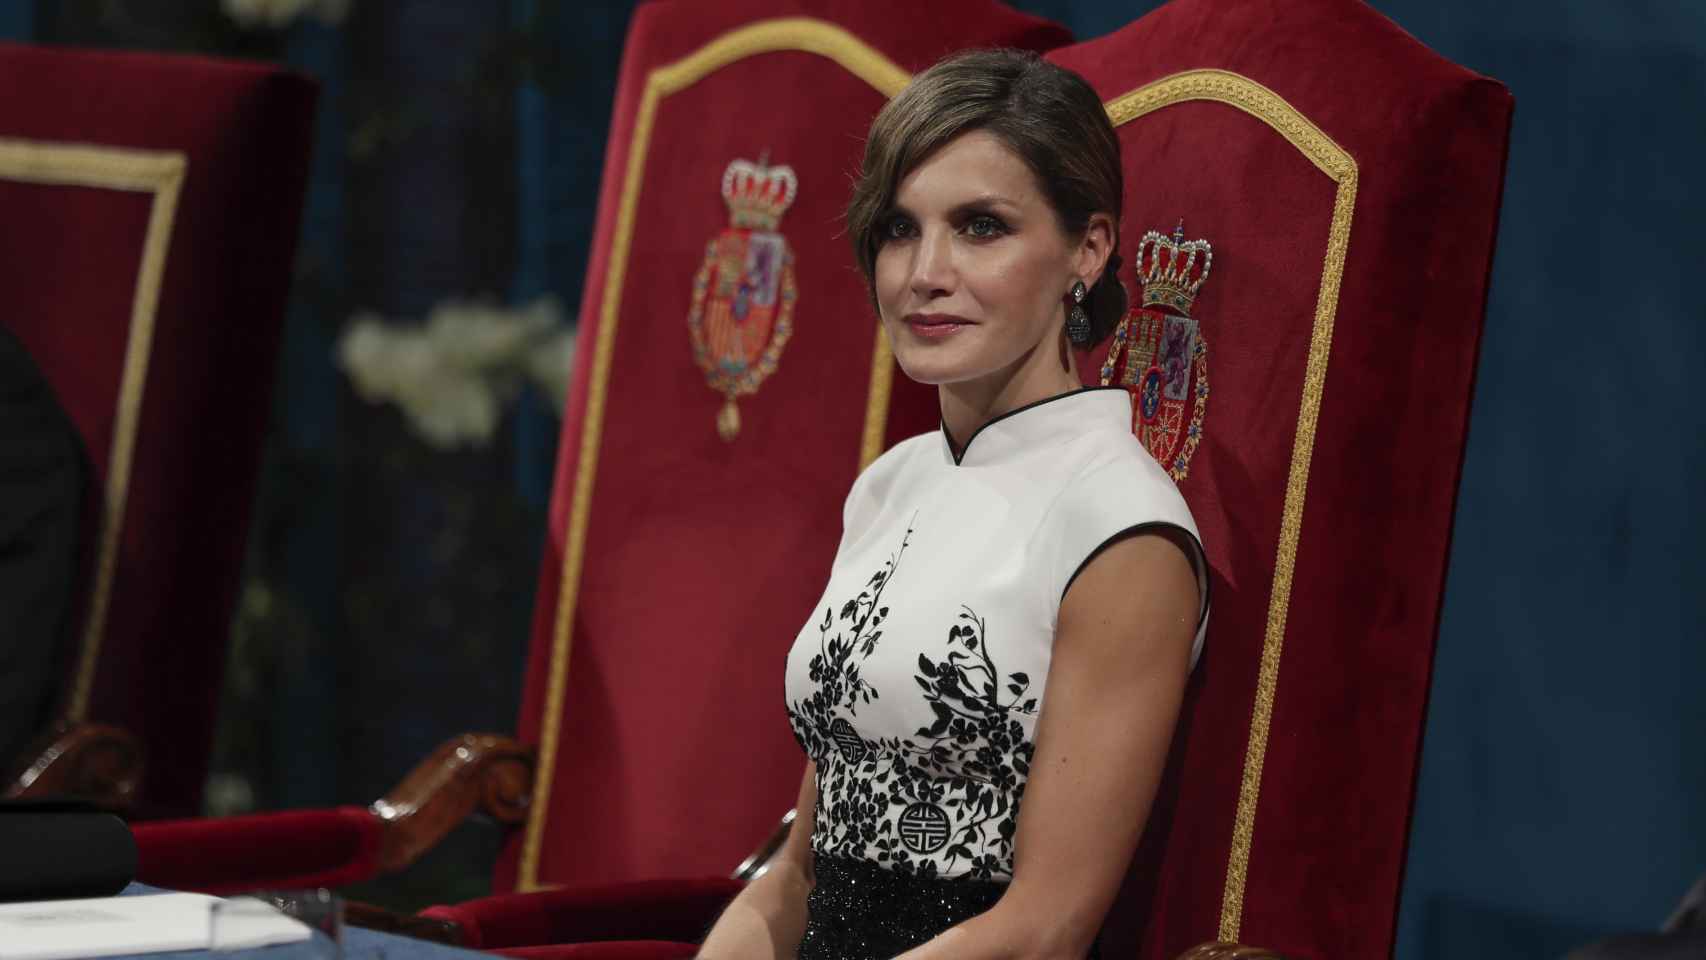 La evolución del estilo de la reina Letizia en los premios Princesa de Asturias